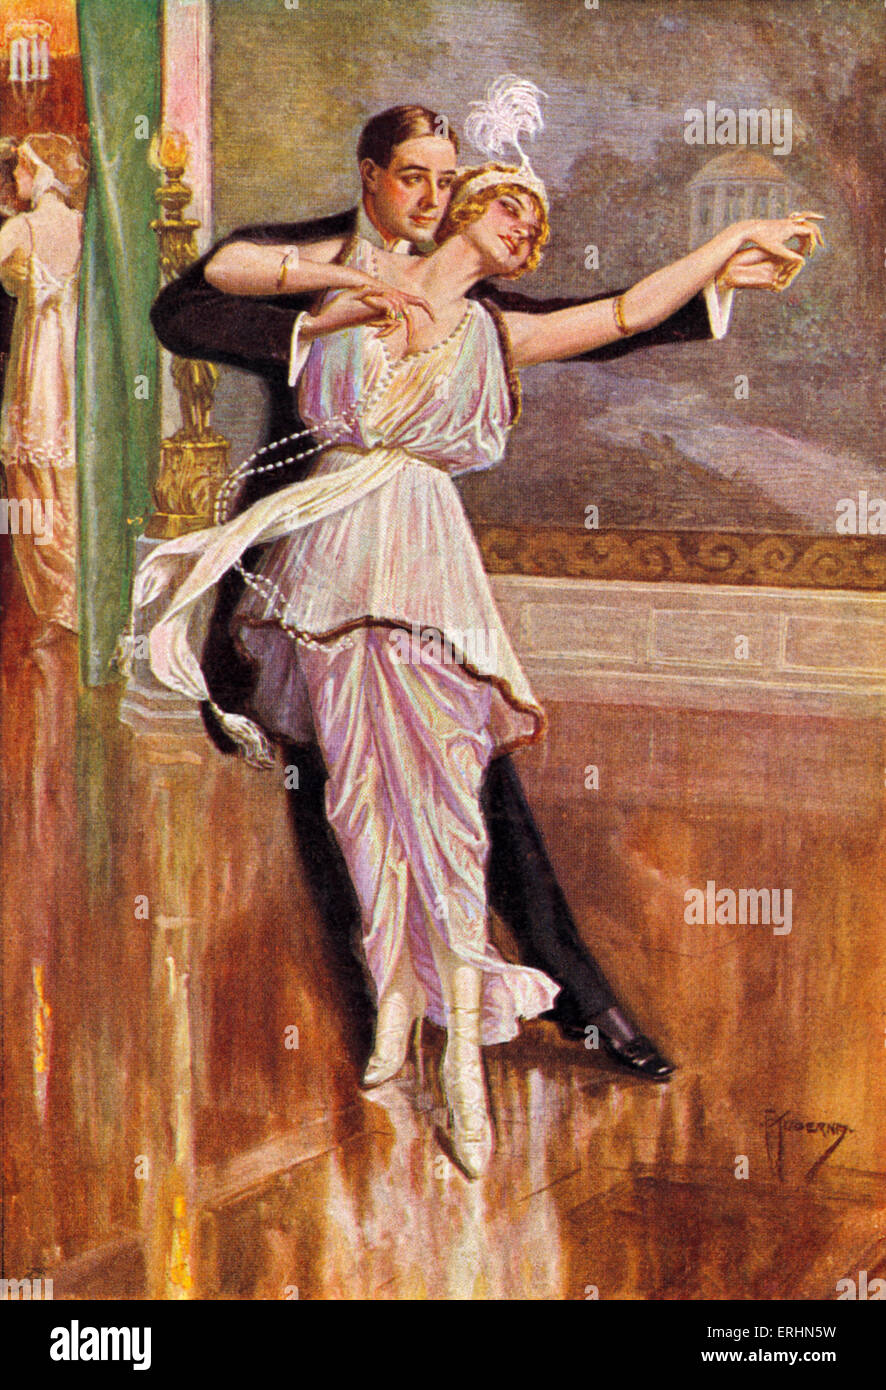 Pareja bailando en Viena a fines del siglo XIX por Kuderny. La mujer está usando una pluma y jefe vestido largo collar de perlas. Foto de stock